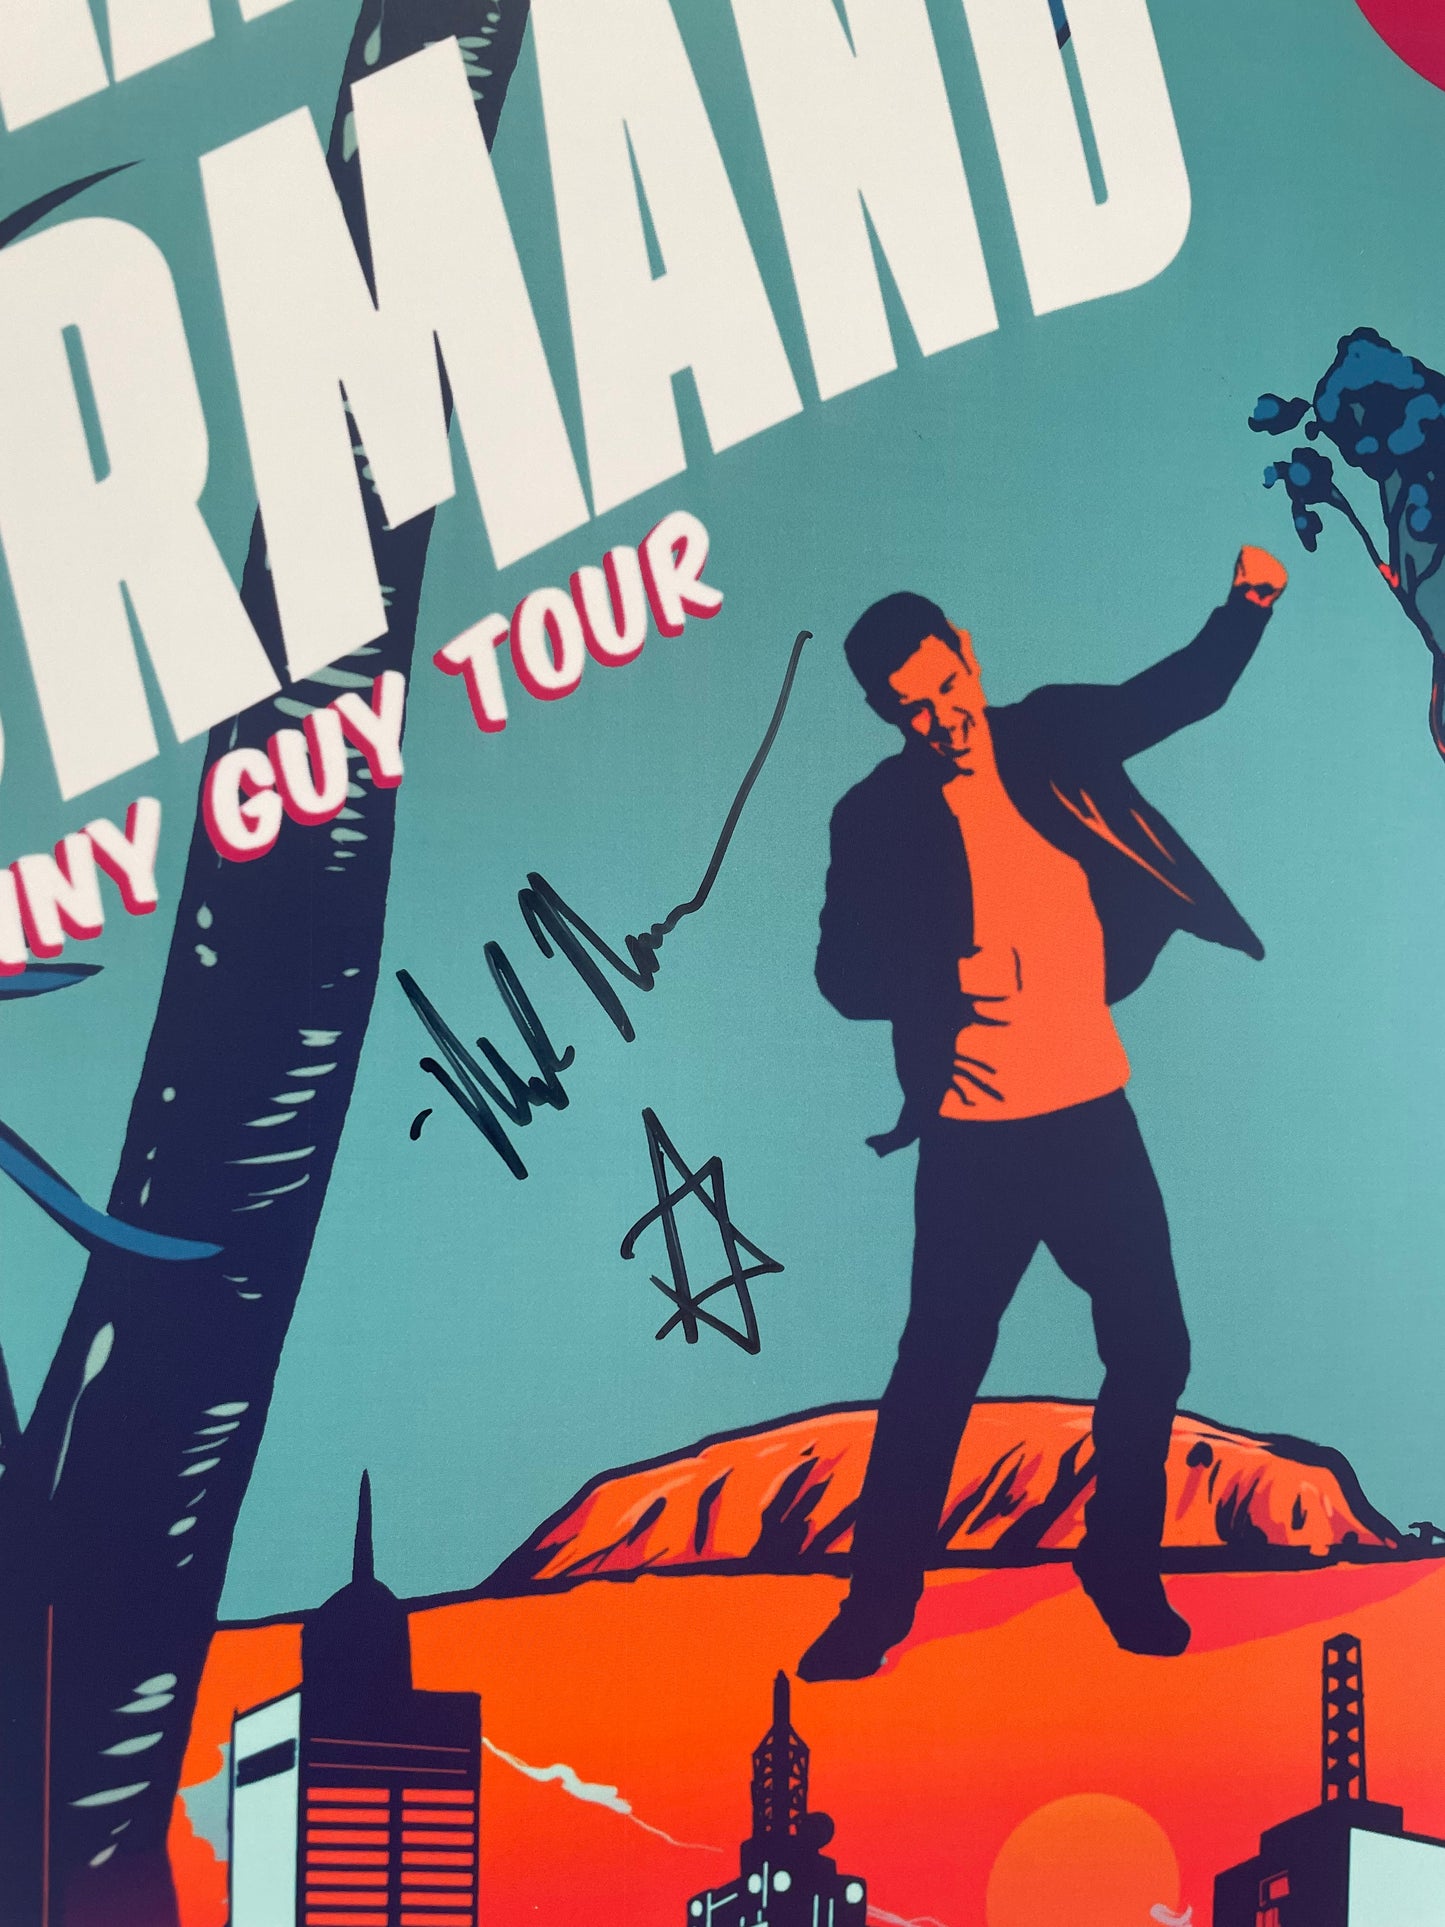 Mark Normand Australia Tour Poster *Autographed*